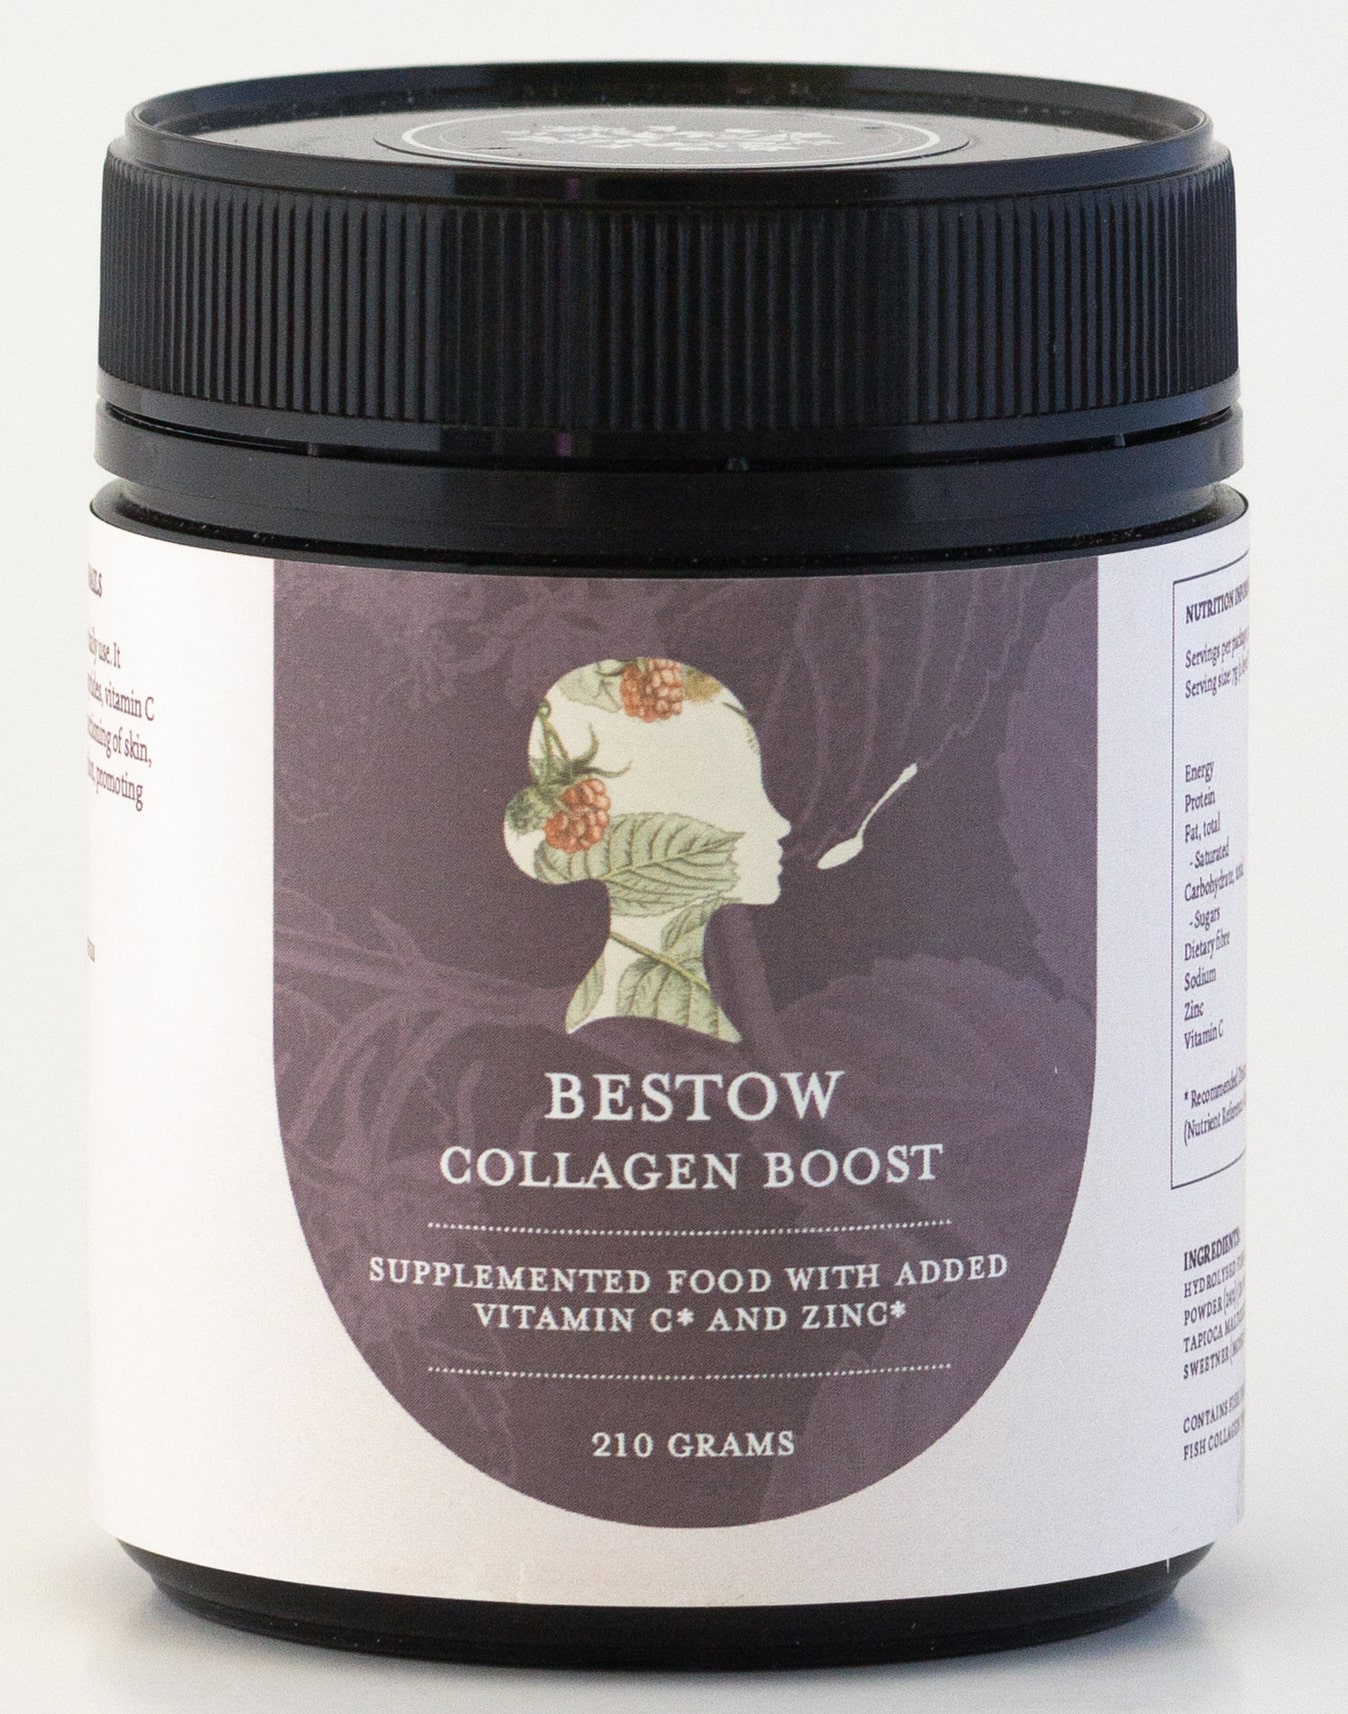 Bestow Collagen Boost